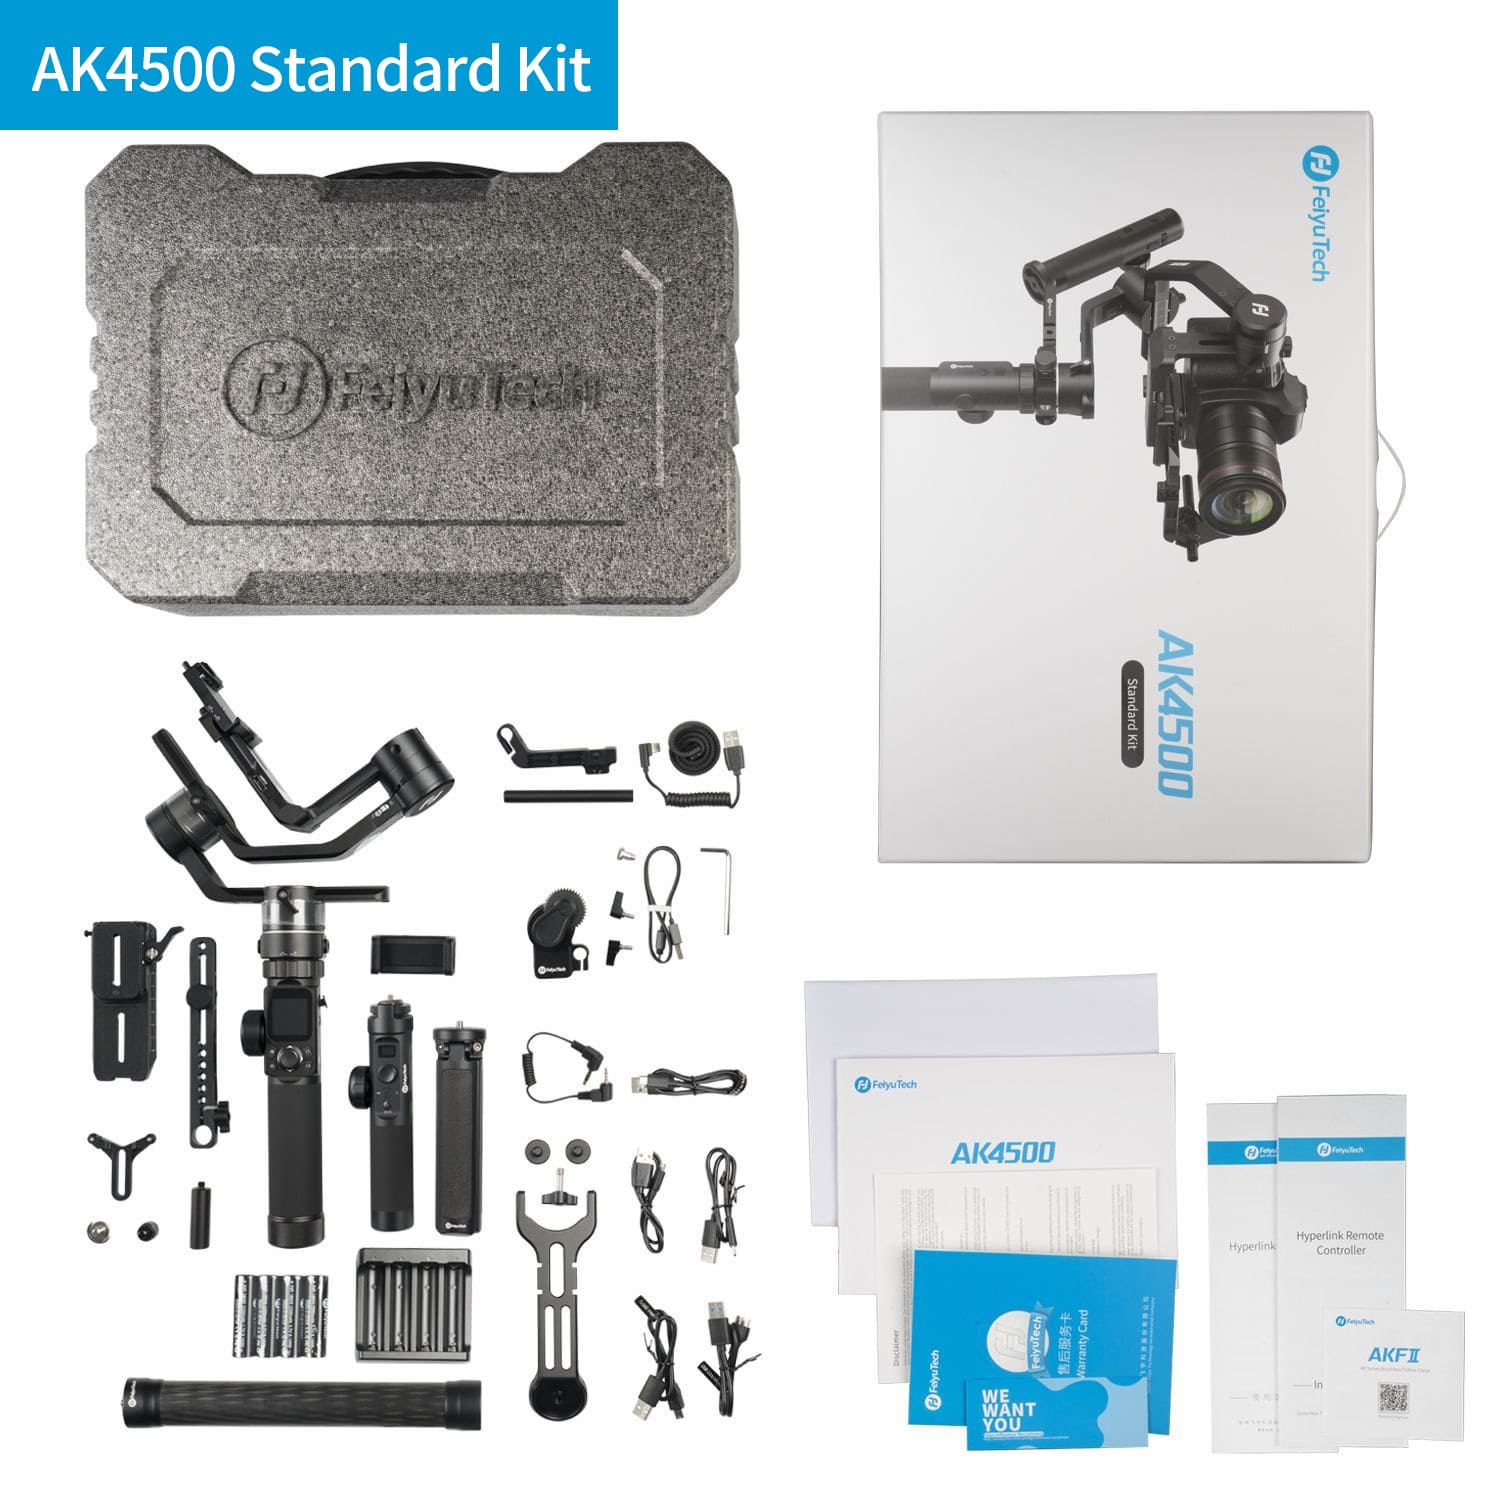 Feiyu AK4500's standard kit